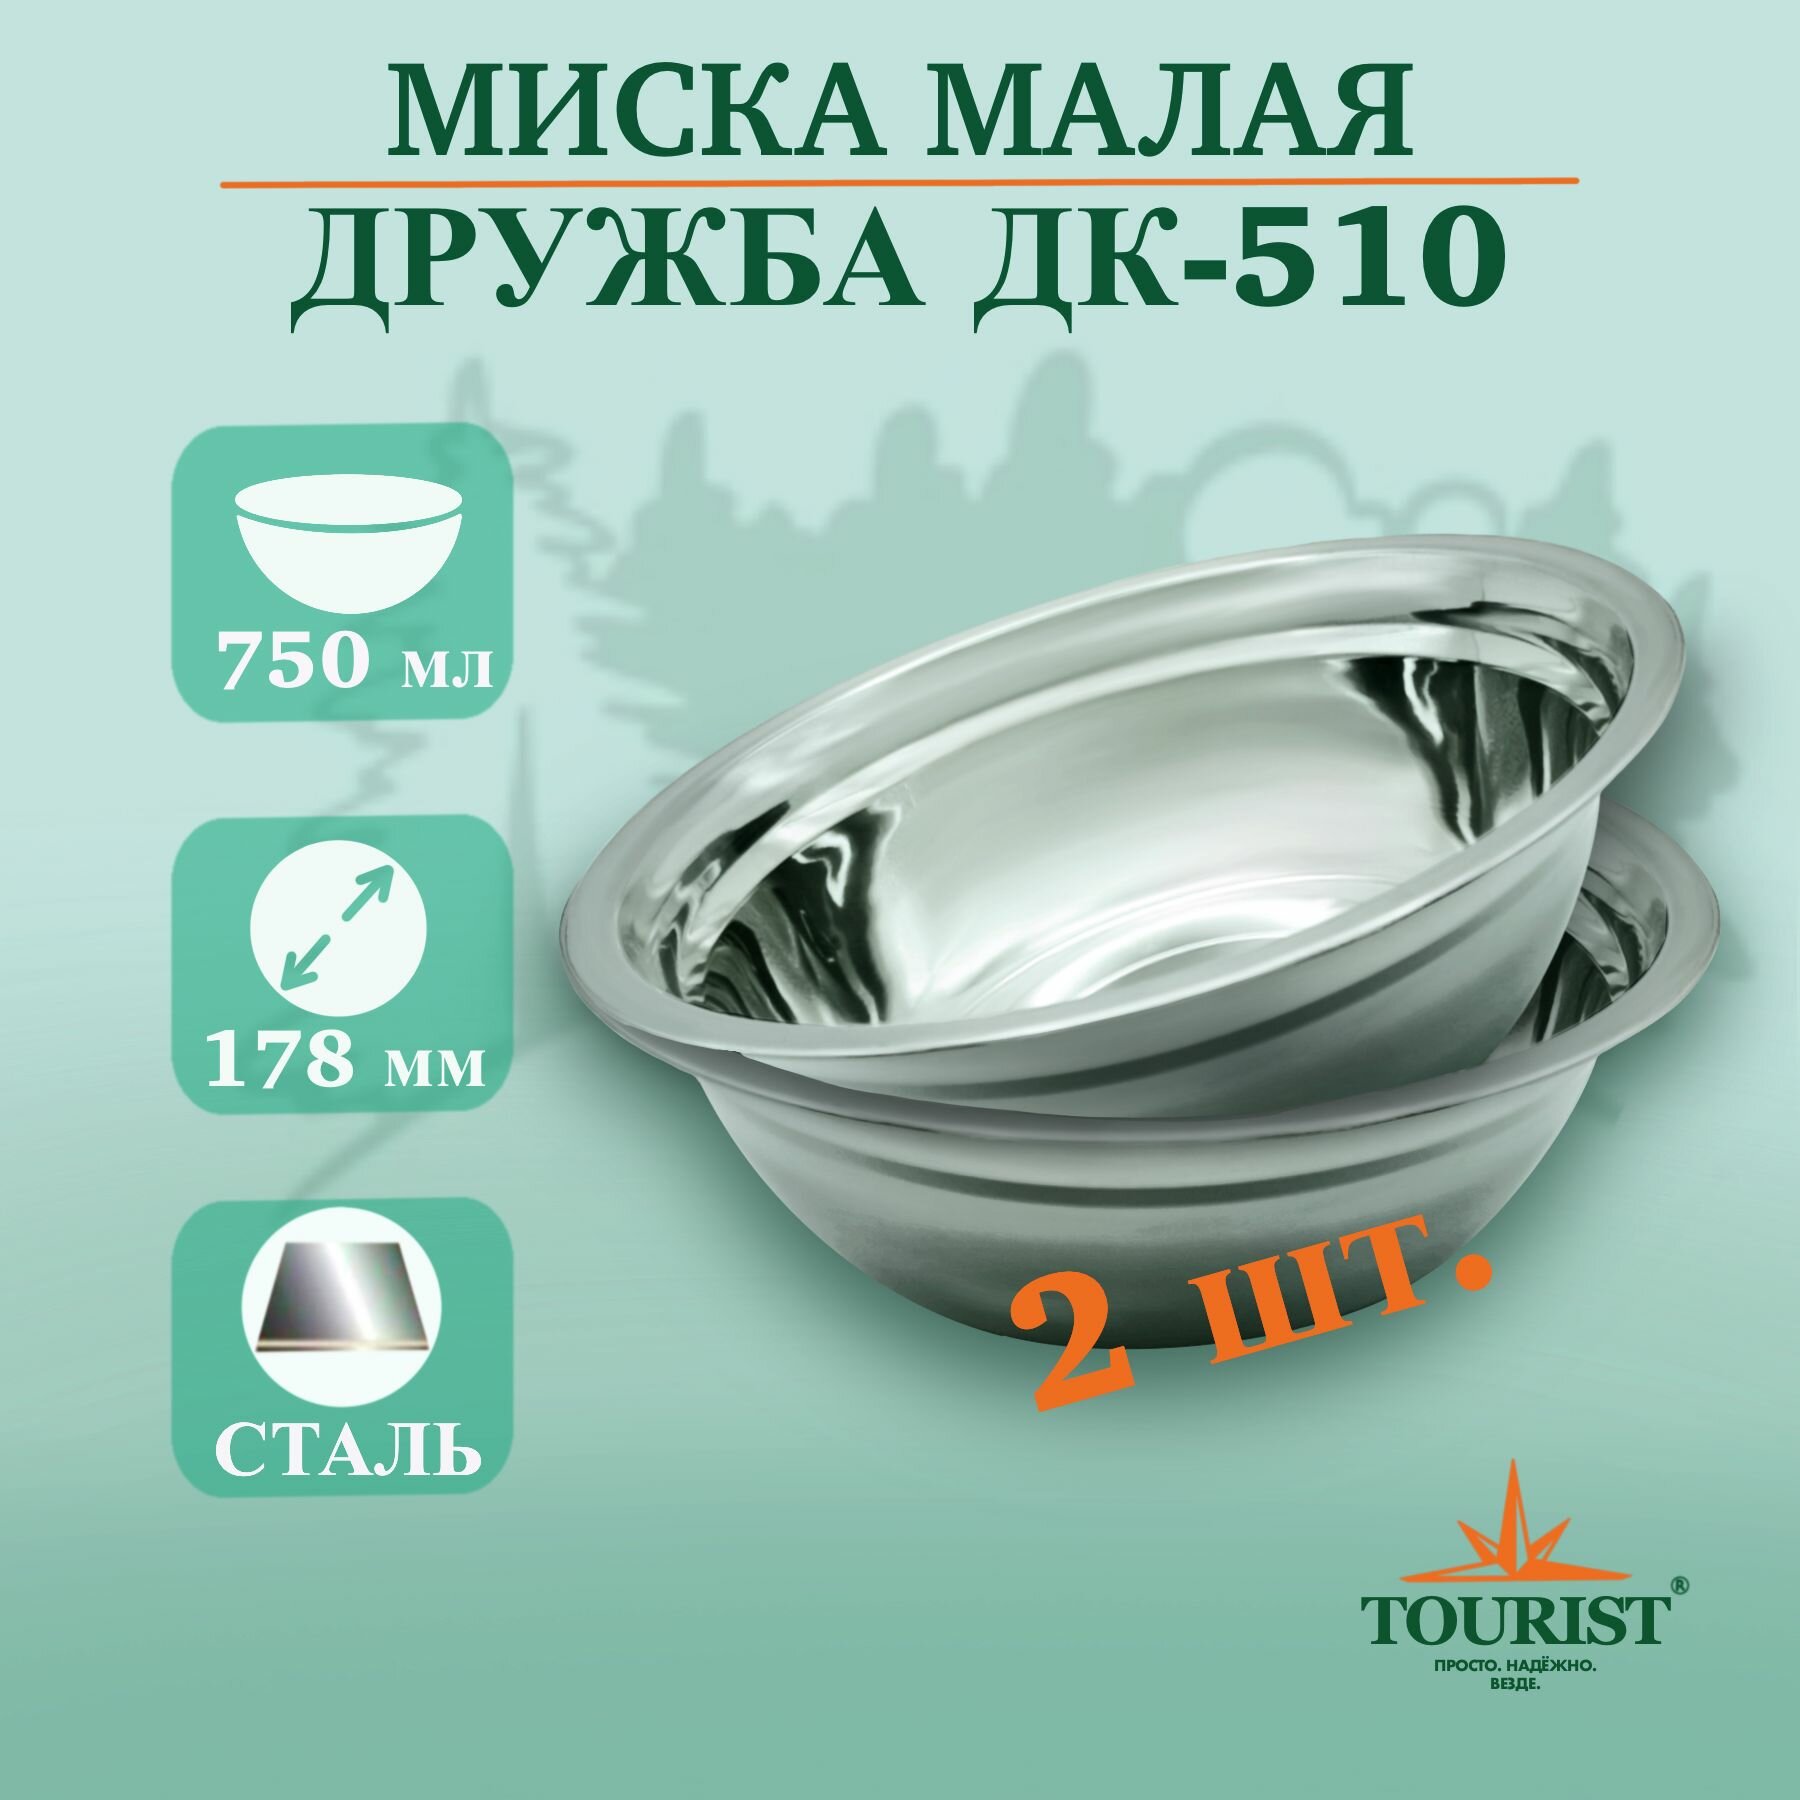 Набор тарелок миска походных туристических 2 шт. Дружба ДК 510 объем 0,75 литра для рыбалки, охоты, туризма и выезда на пикник